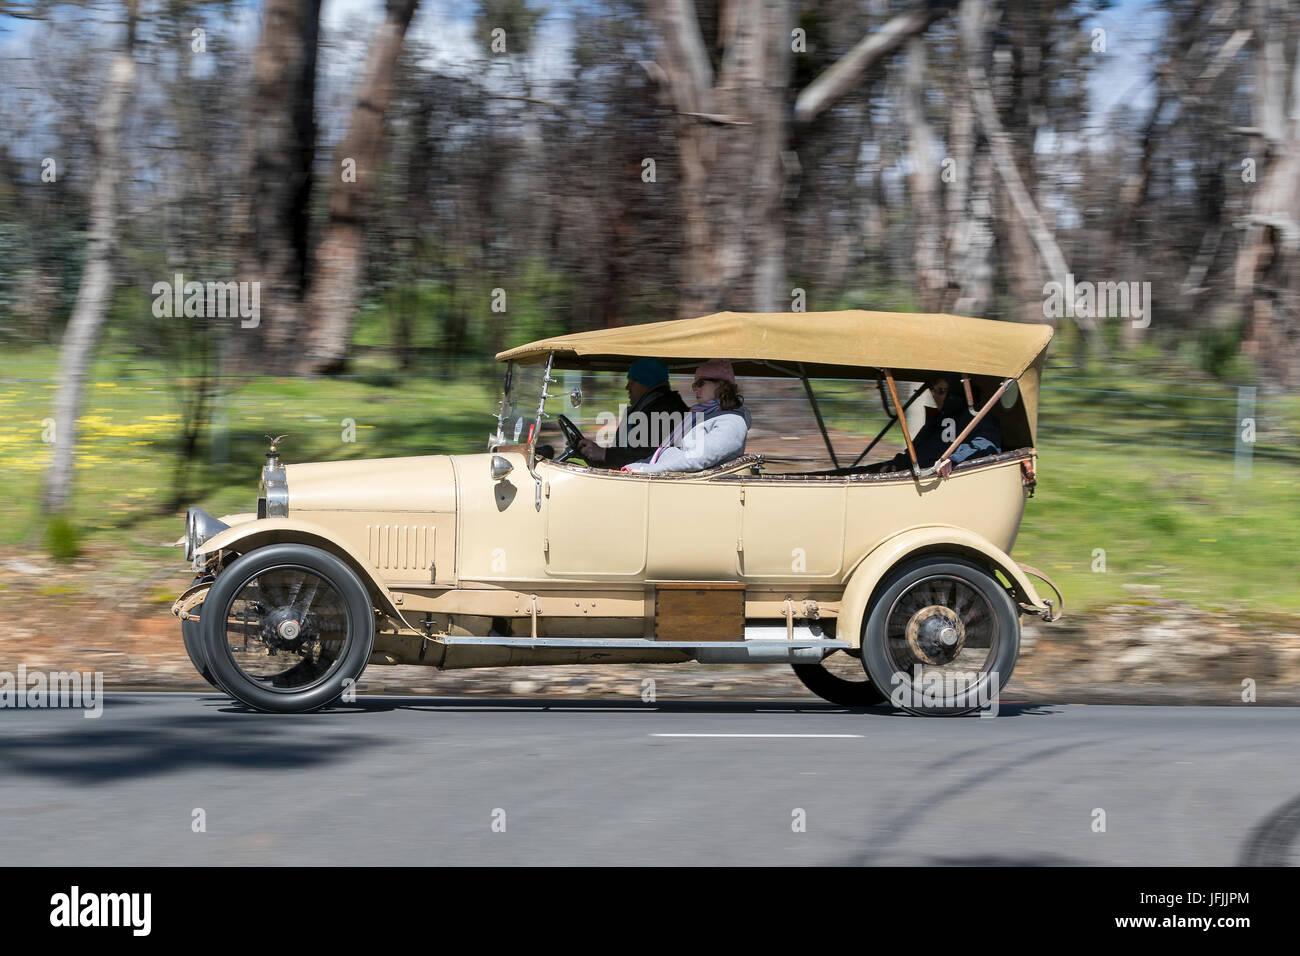 Vintage 1914 KK Minerva 18CV Tourer la conduite sur des routes de campagne près de la ville de Birdwood, Australie du Sud. Banque D'Images